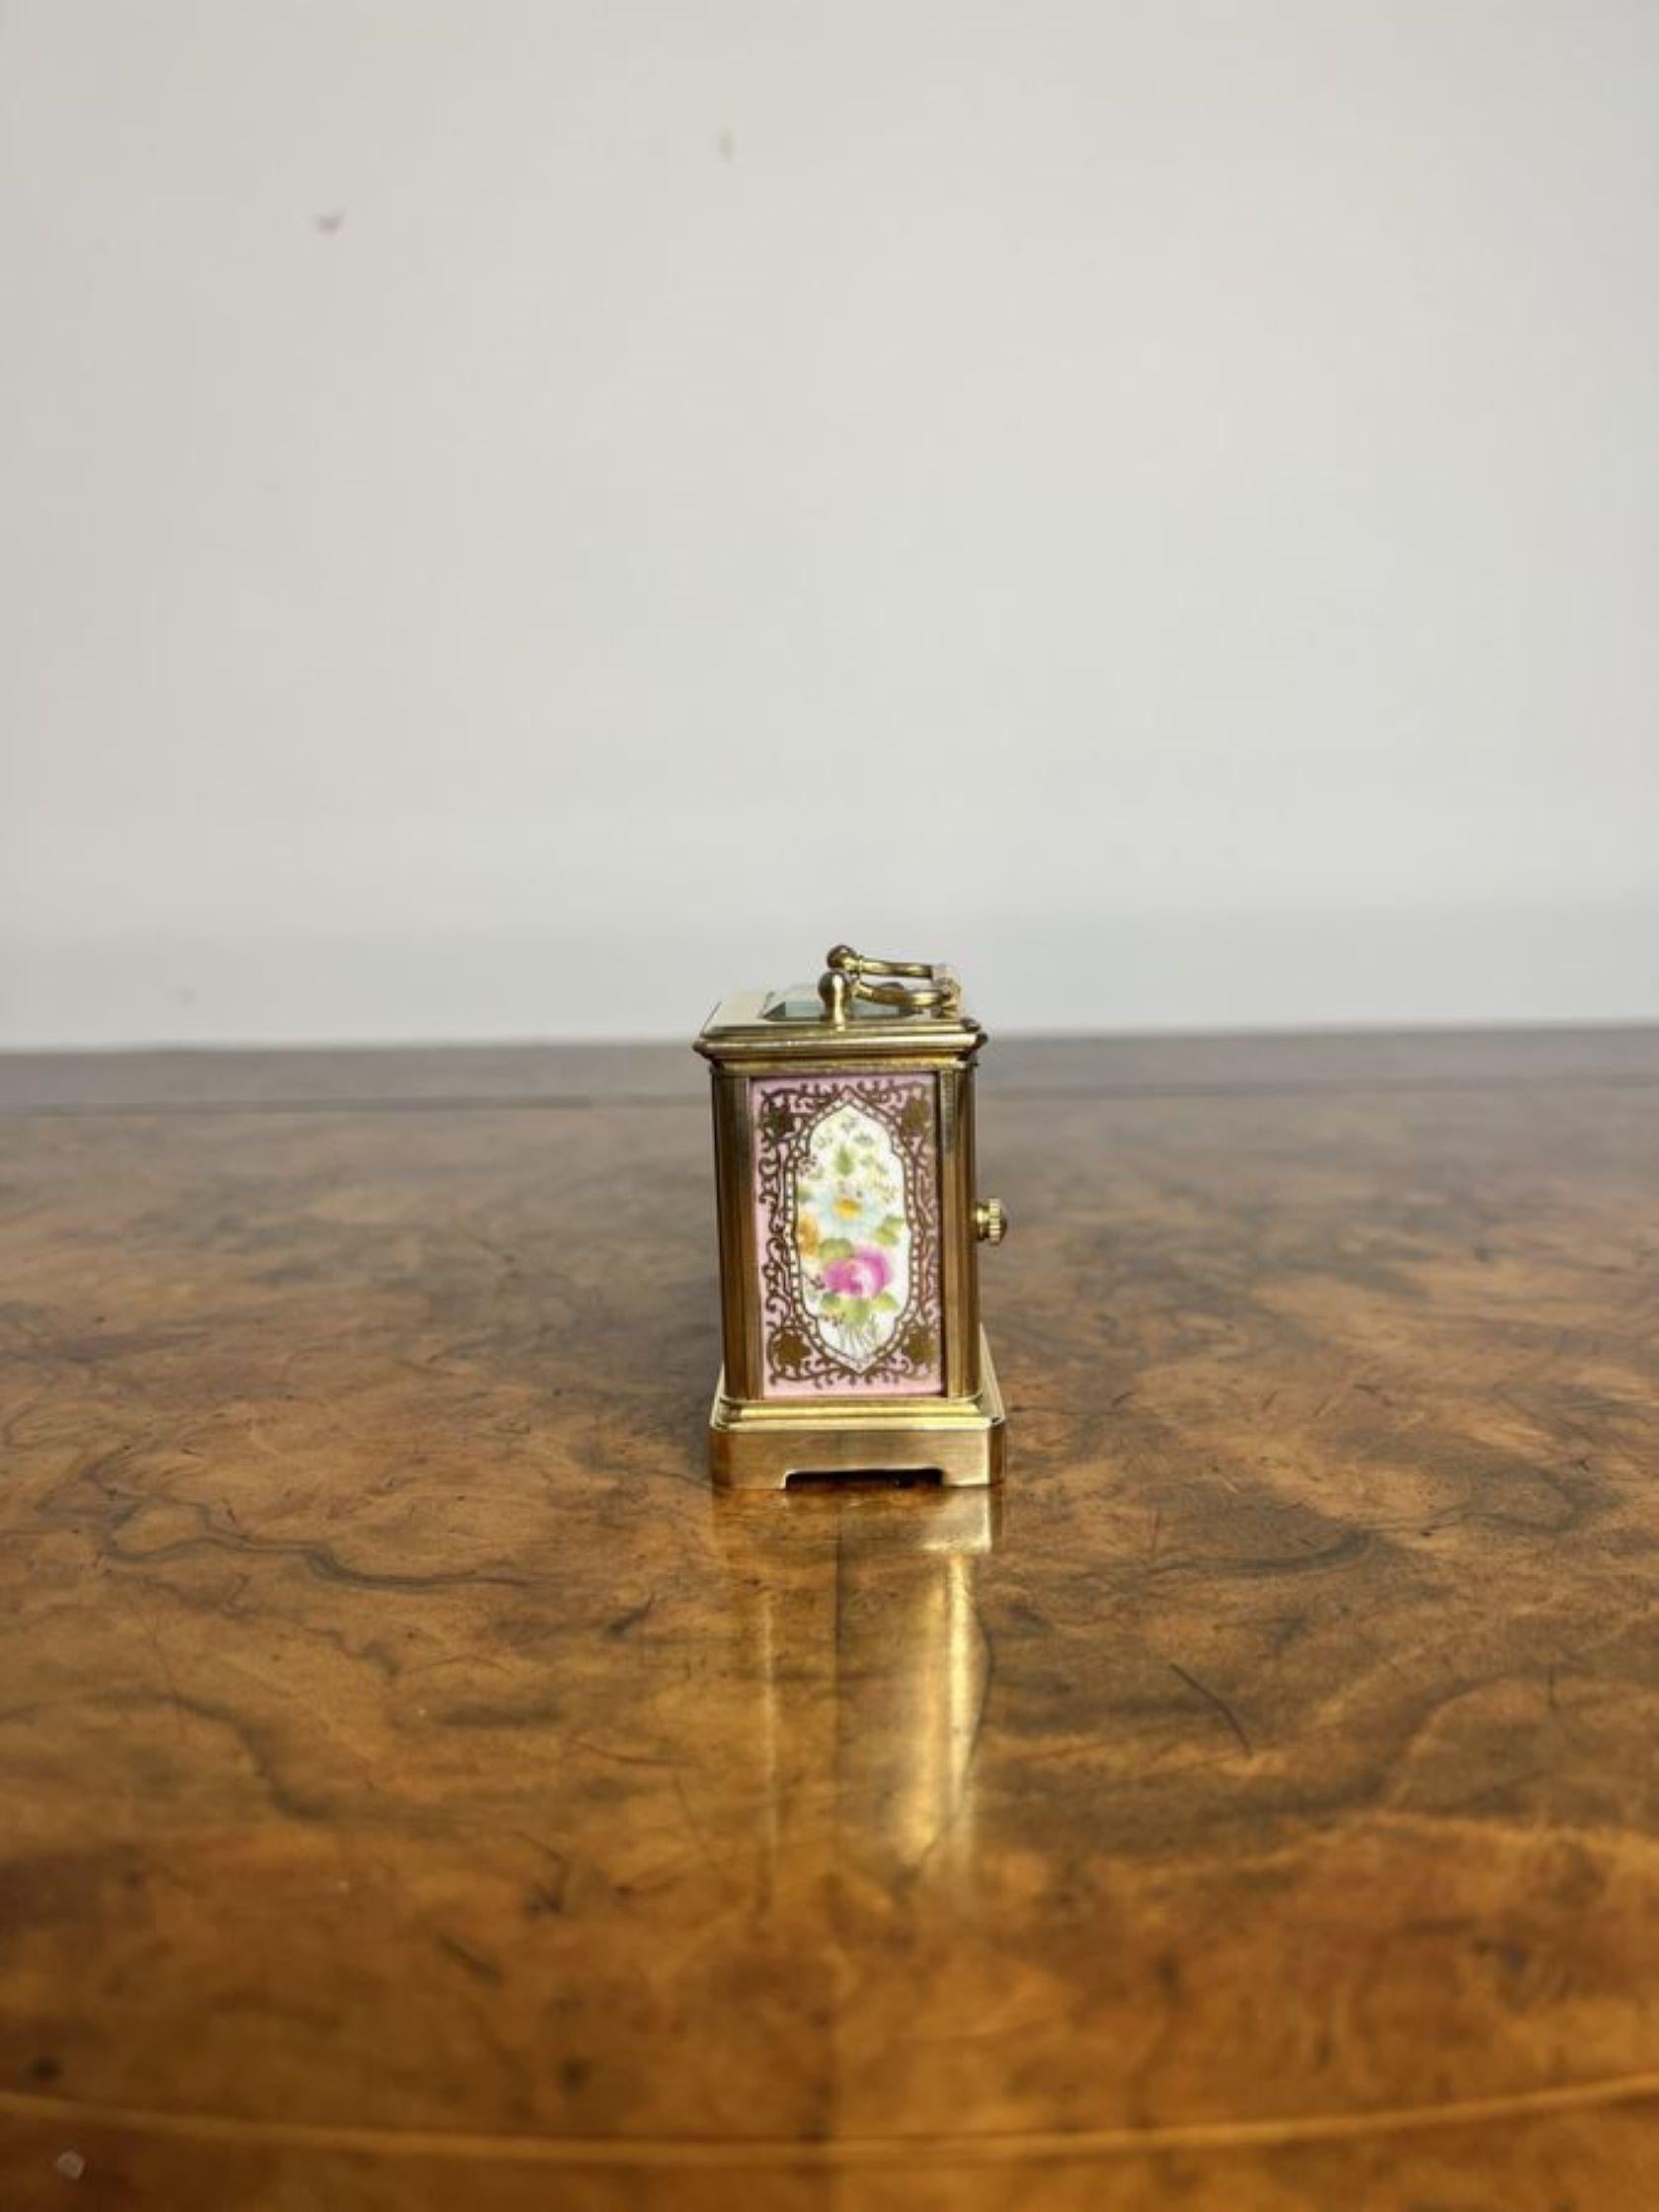 Magnifique horloge miniature en laiton de qualité édouardienne, avec de beaux panneaux en porcelaine peints à la main et décorés de fleurs roses, vertes et jaunes entourées de volutes dorées, avec un mouvement français de 8 jours, un cadran en